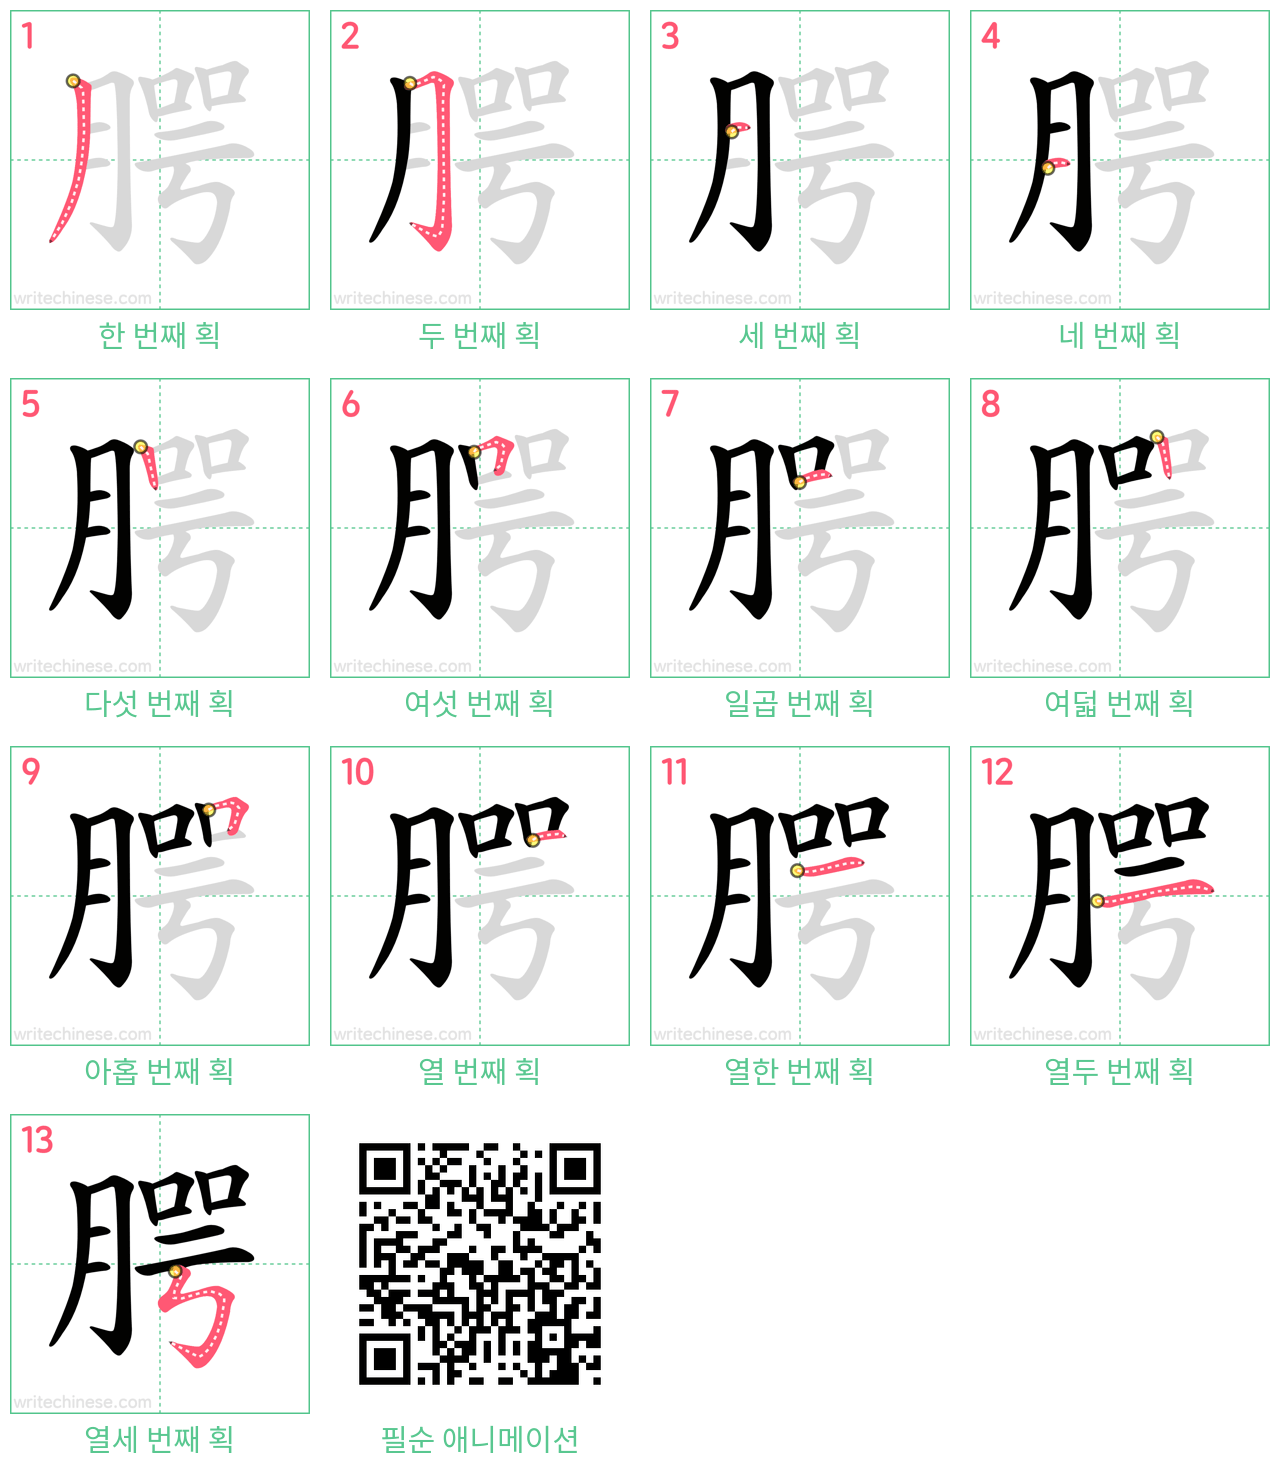 腭 step-by-step stroke order diagrams